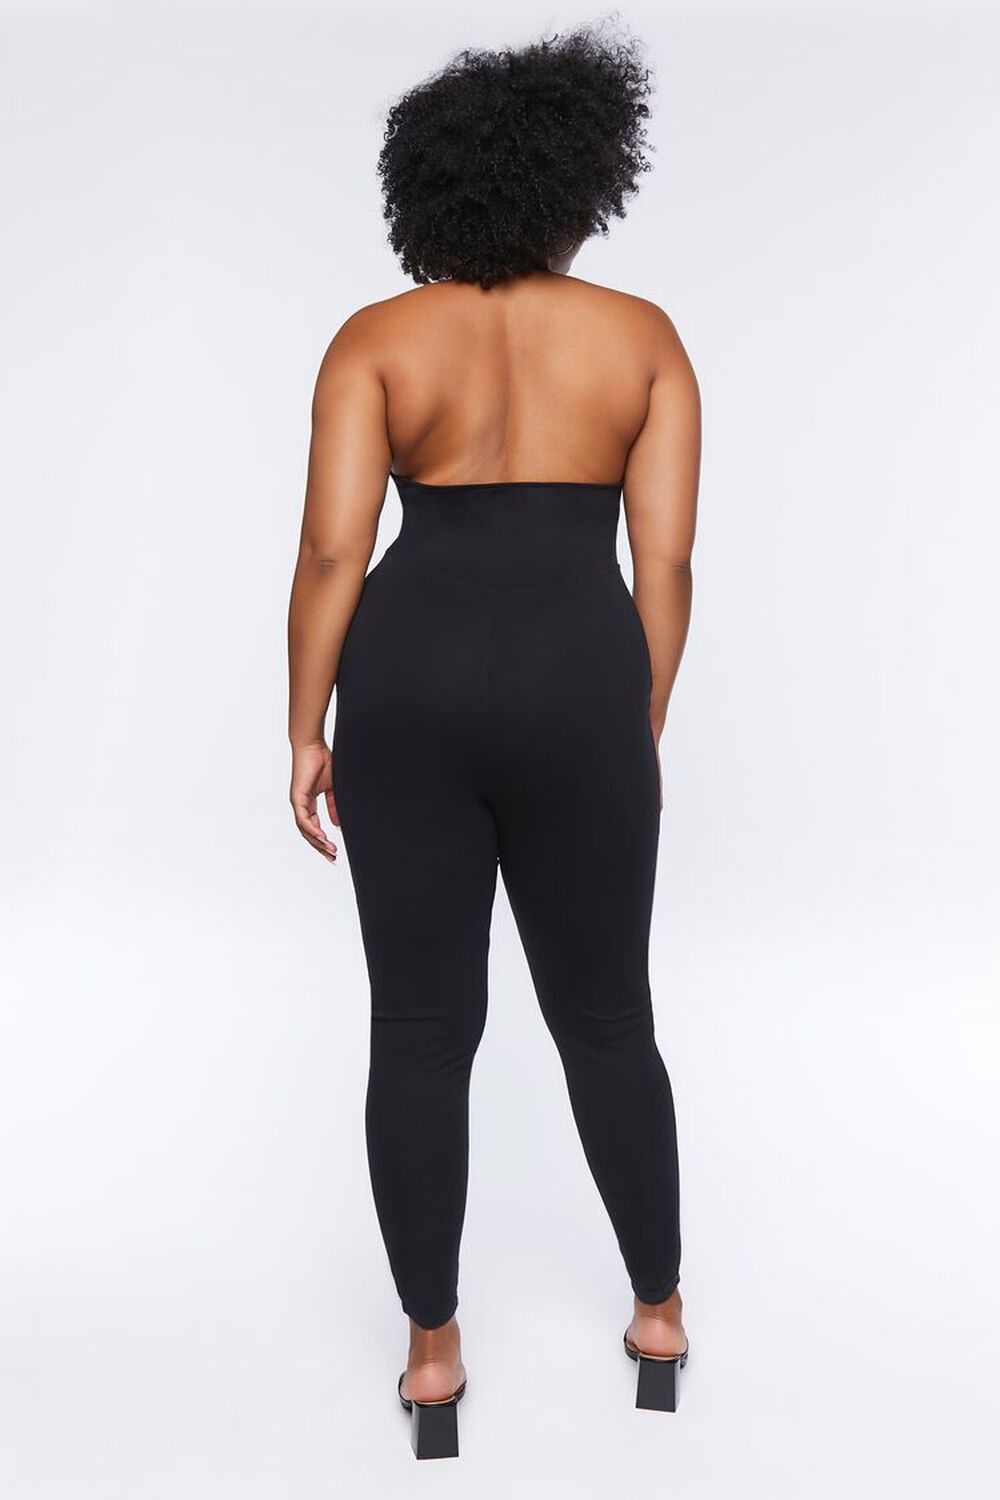 BLACK Plus Size Lace-Up Jumpsuit, image 3